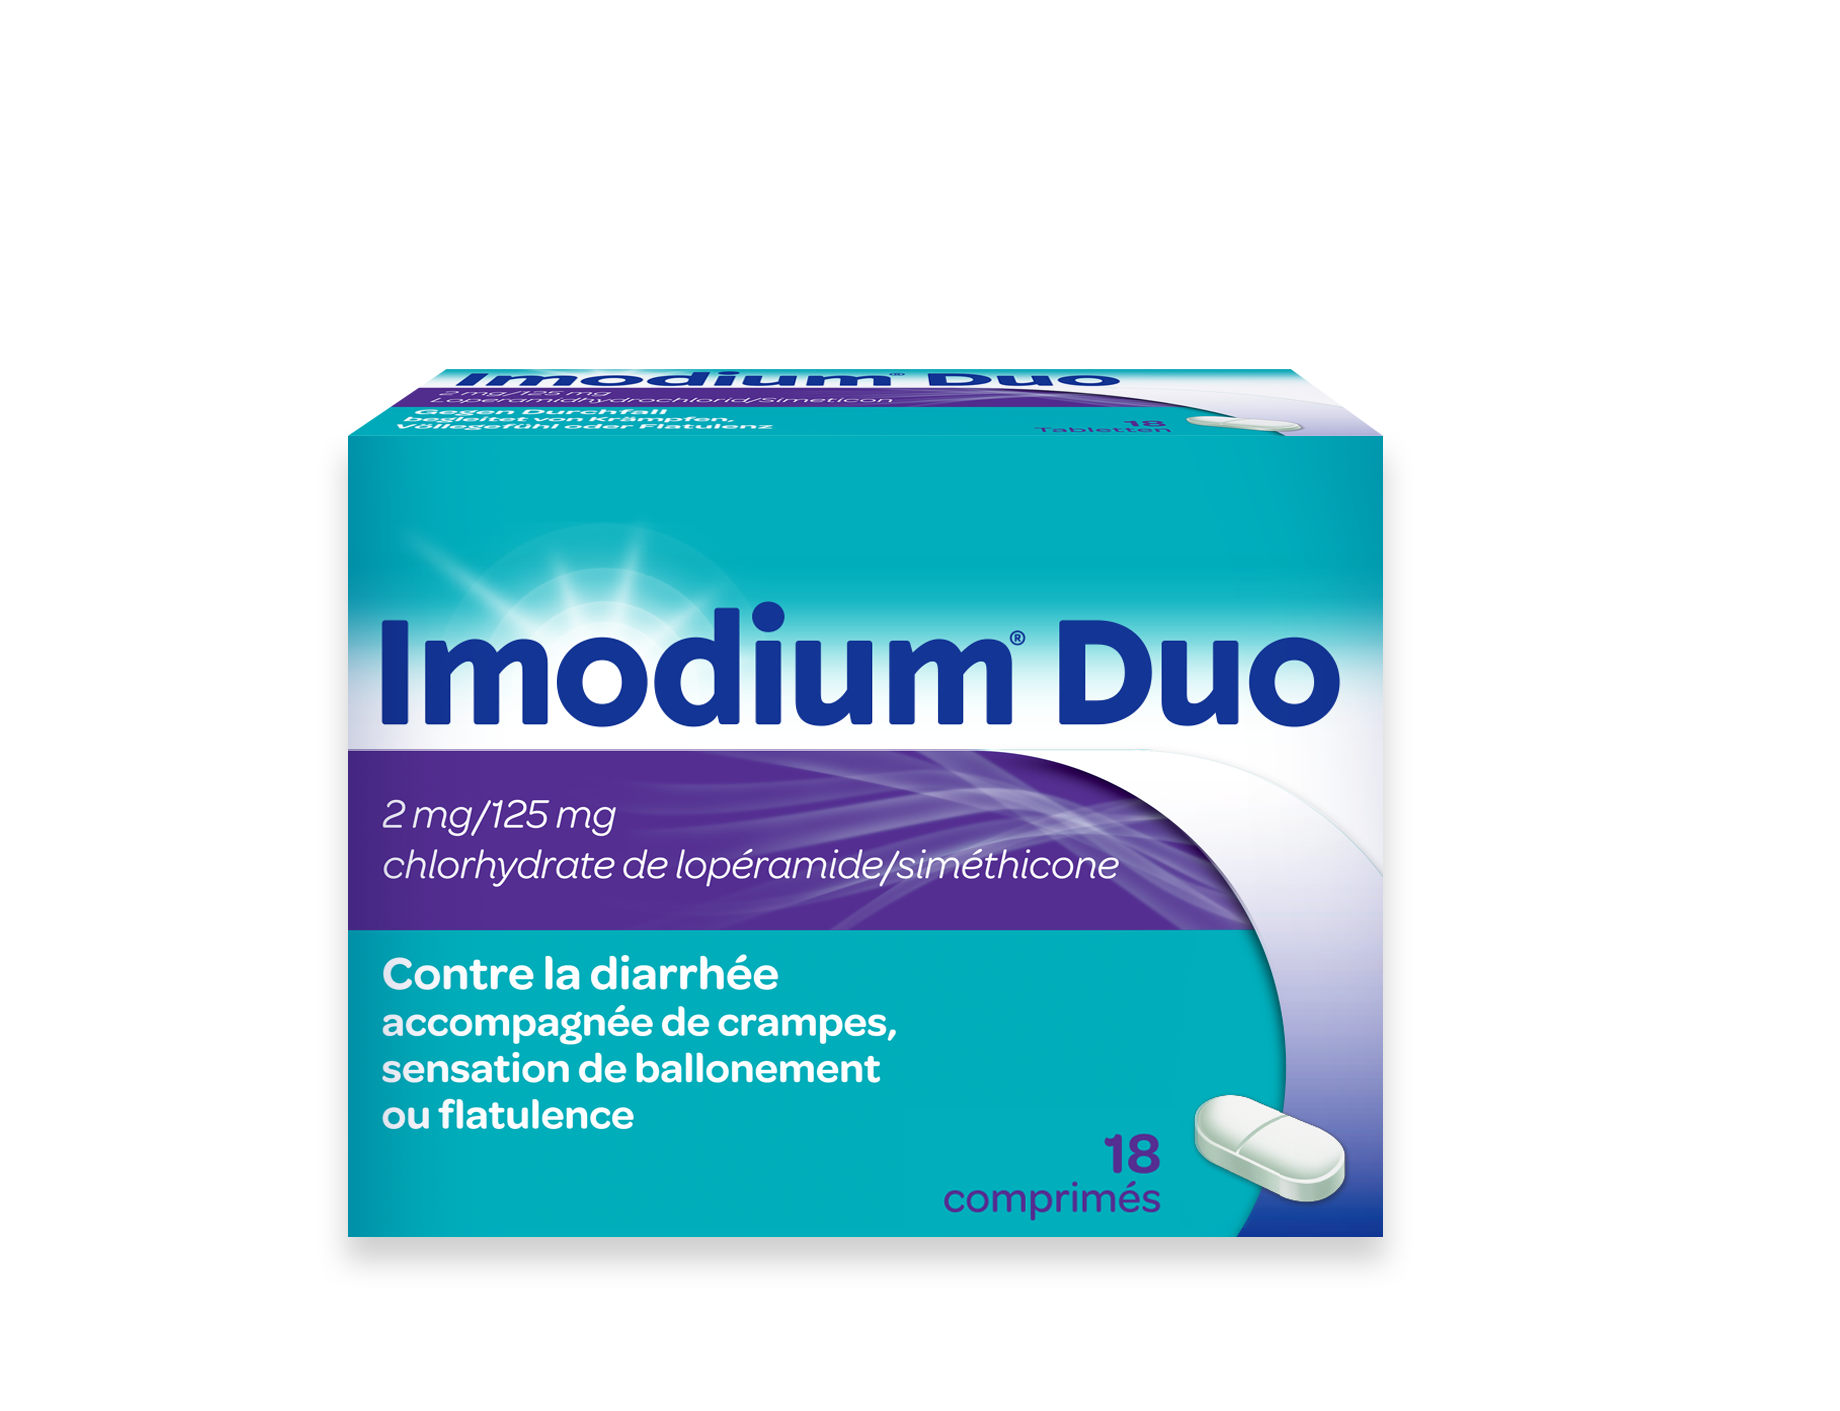 IMODIUM®  Duo (loperamide + simeticon) bij behandeling diarree met pijnlijke krampen